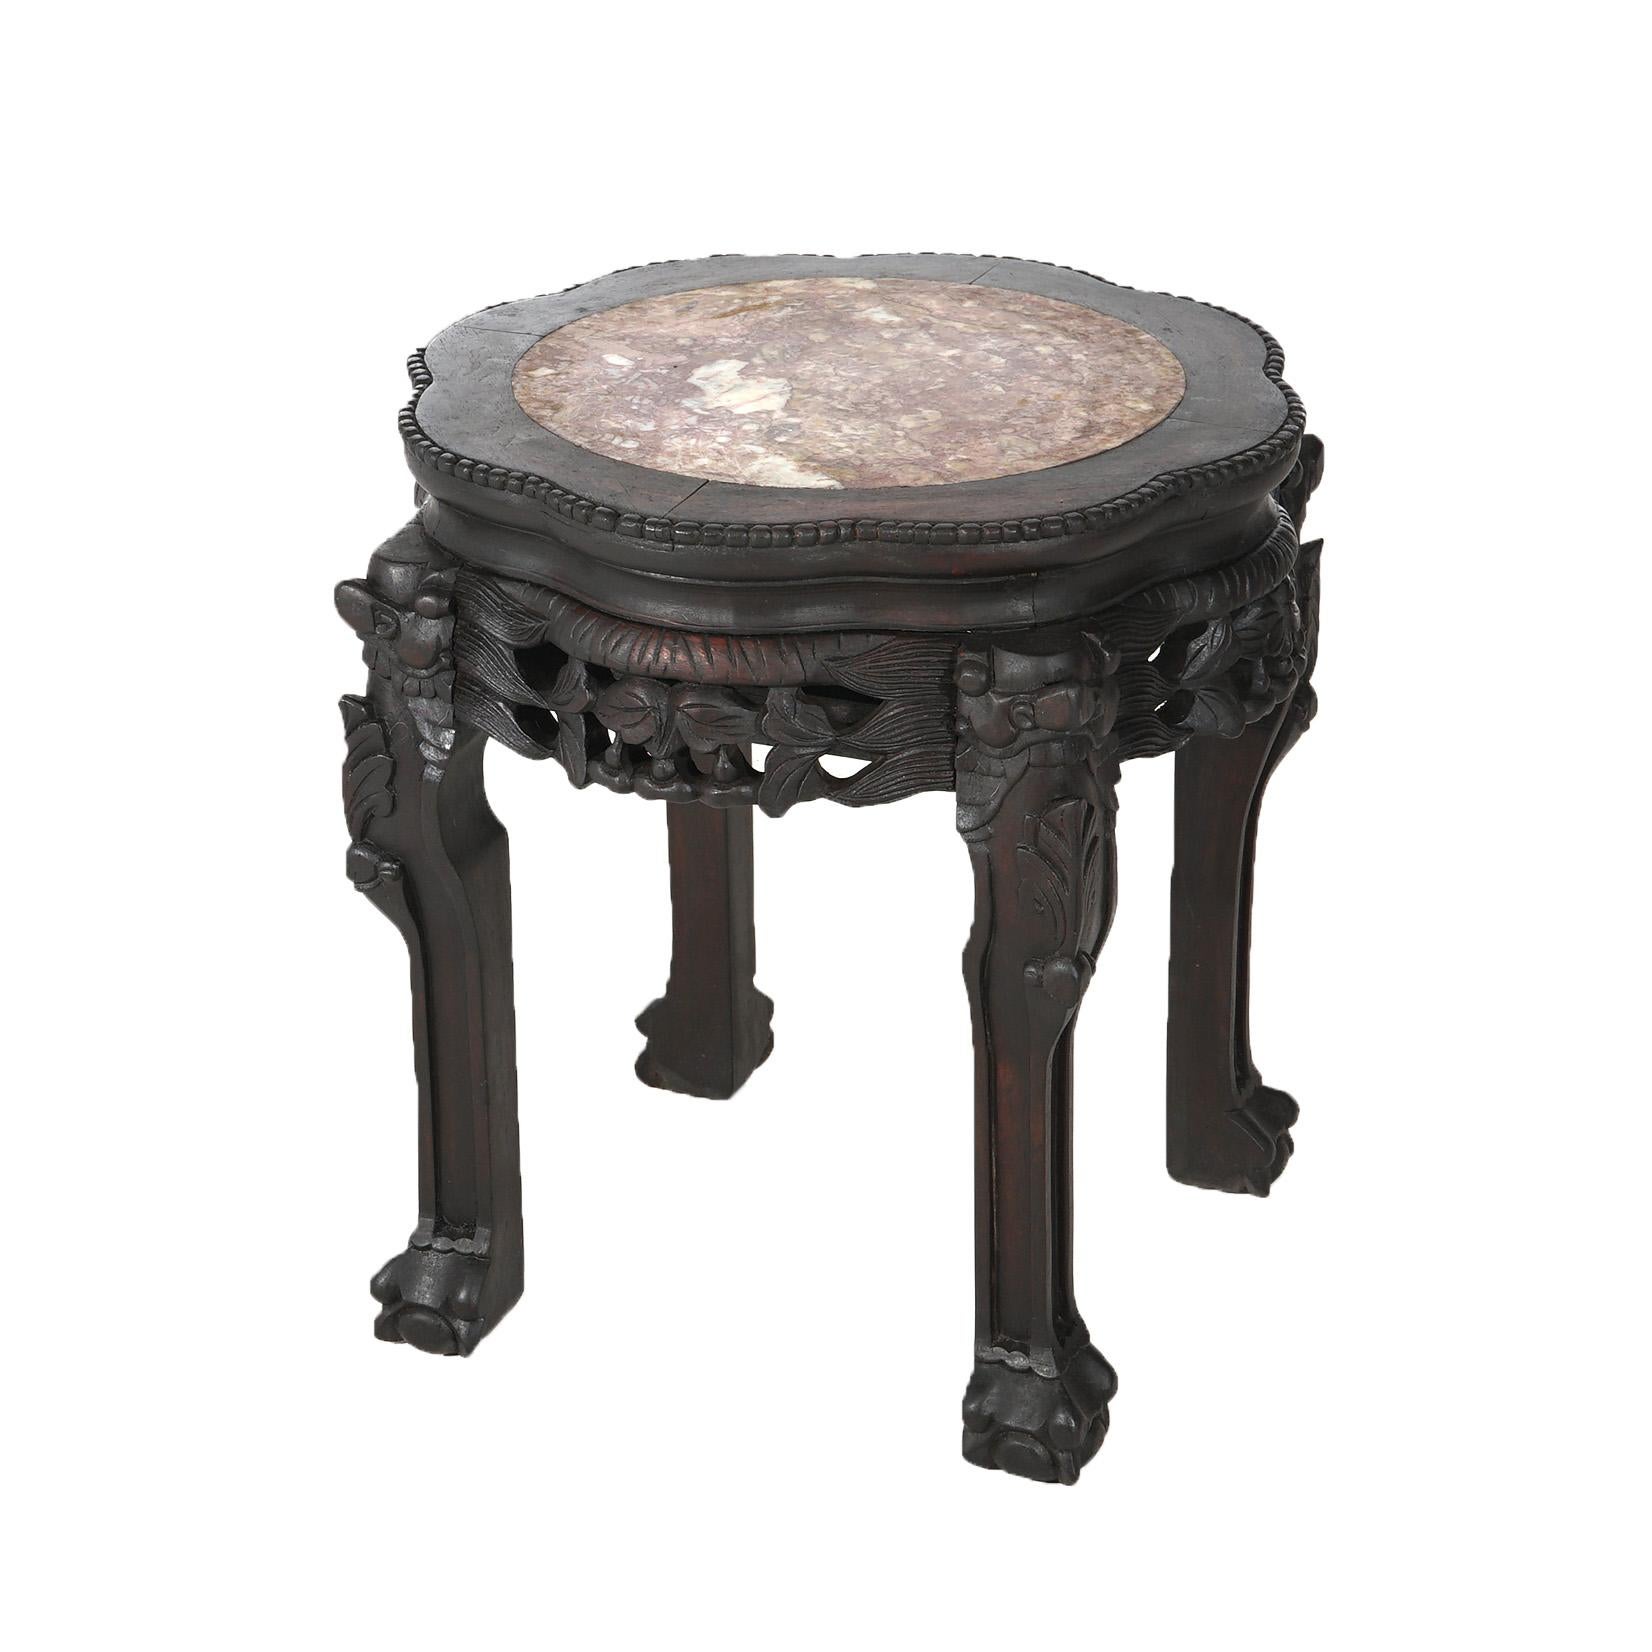 Antike chinesische Blattwerk geschnitzt Rosewood Stand mit Inset Rouge Marmorplatte C1910

Maße - 17,75 